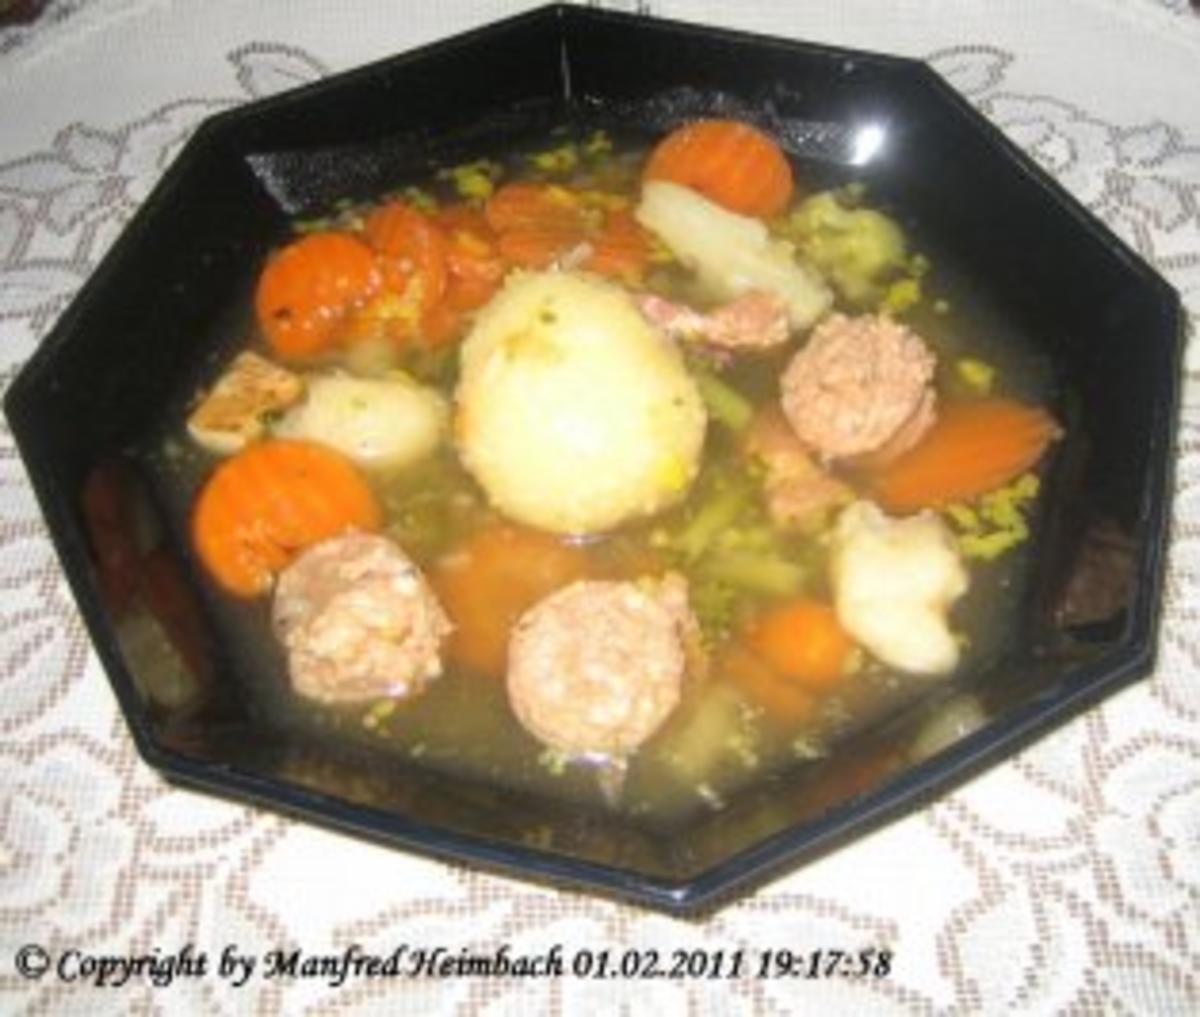 Suppen – klare Gemüsesuppe mit Miniknödel und Speck a’la Manfred - Rezept